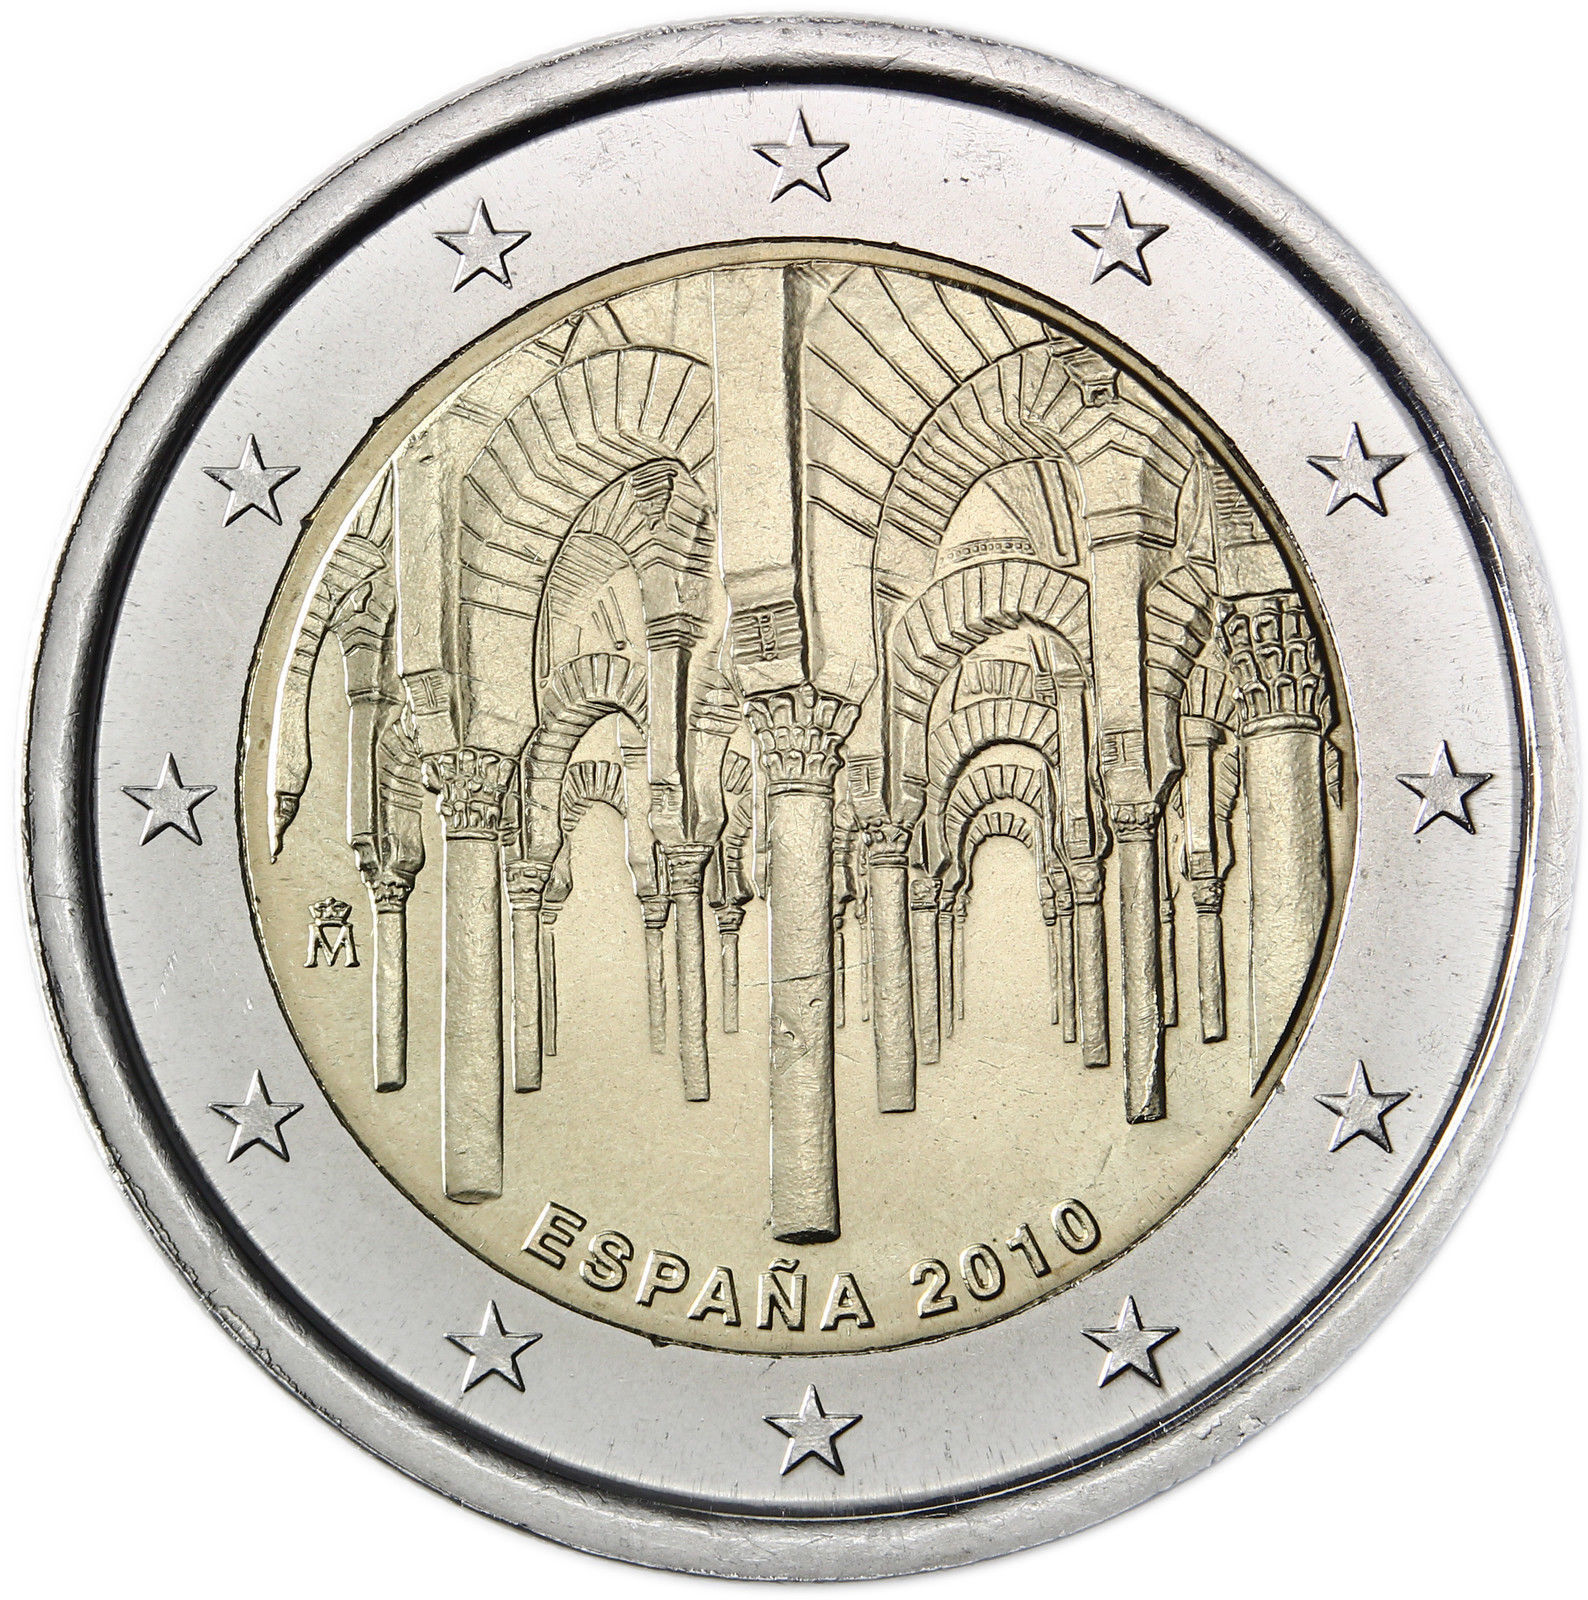 Spain 2 euro coin 2010 "Historic Centre of Cordoba" UNC